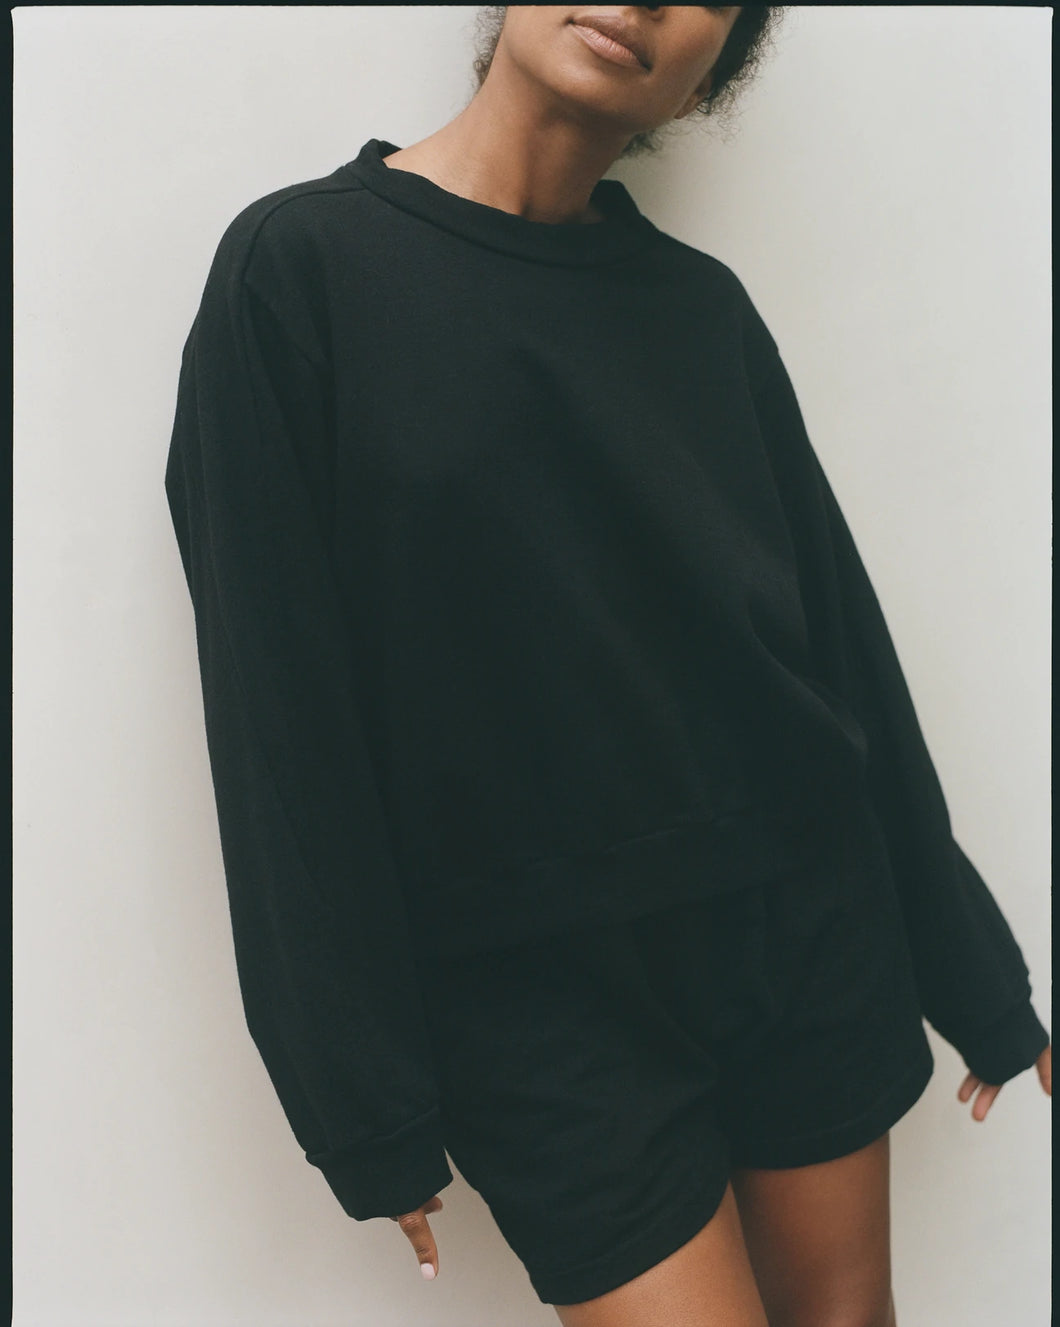 Wol Hide Easy Summer Sweatshirt : Black